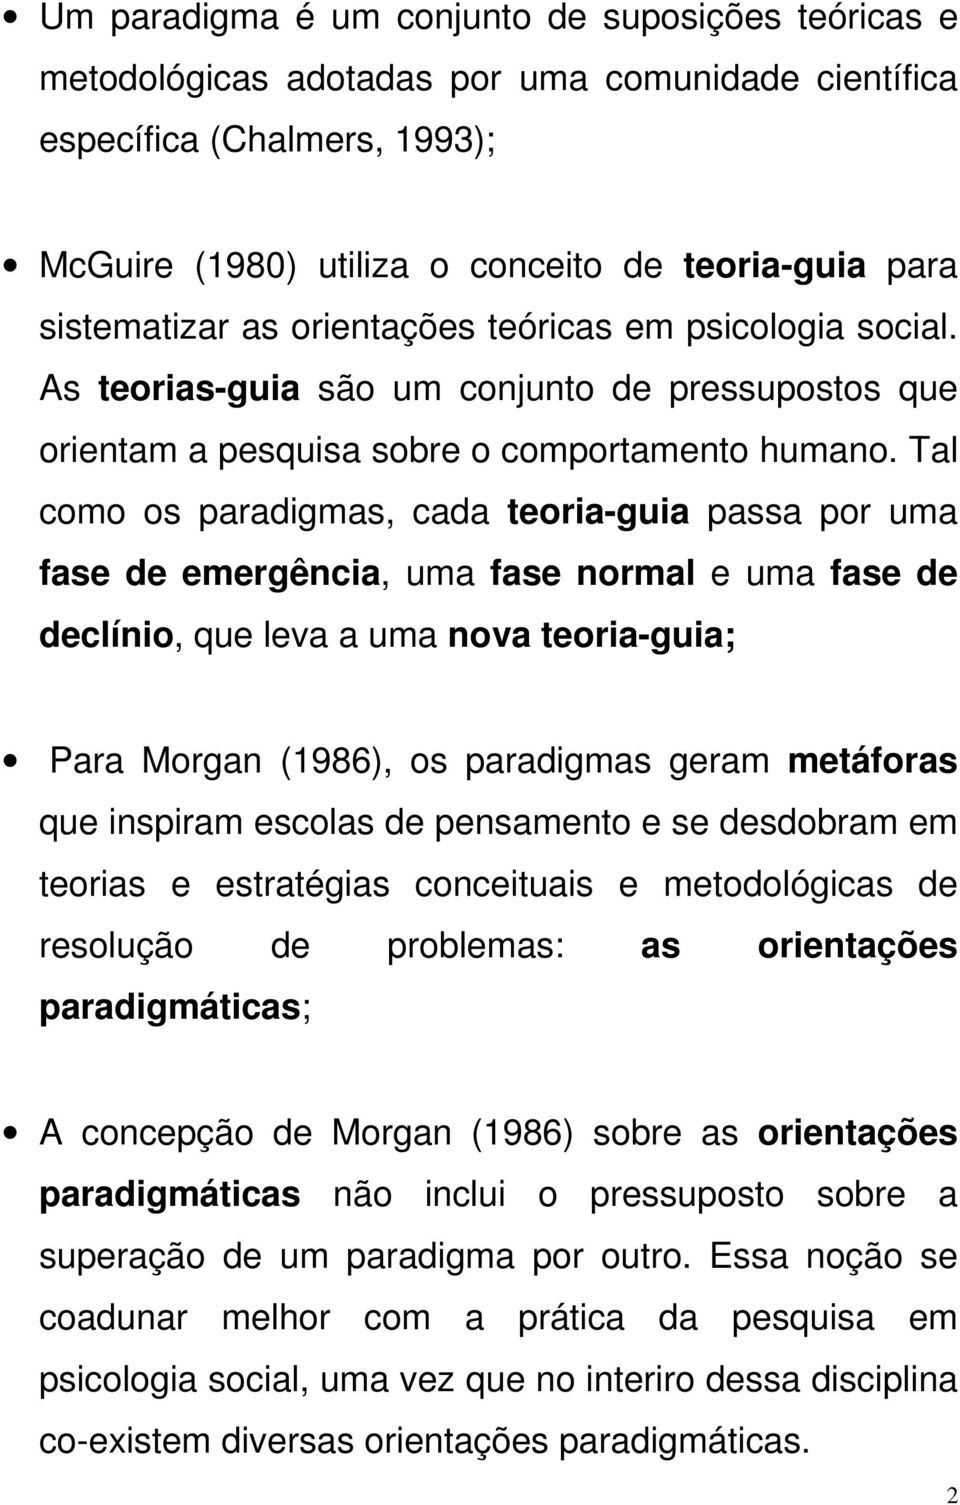 Tal como os paradigmas, cada teoria-guia passa por uma fase de emergência, uma fase normal e uma fase de declínio, que leva a uma nova teoria-guia; Para Morgan (1986), os paradigmas geram metáforas